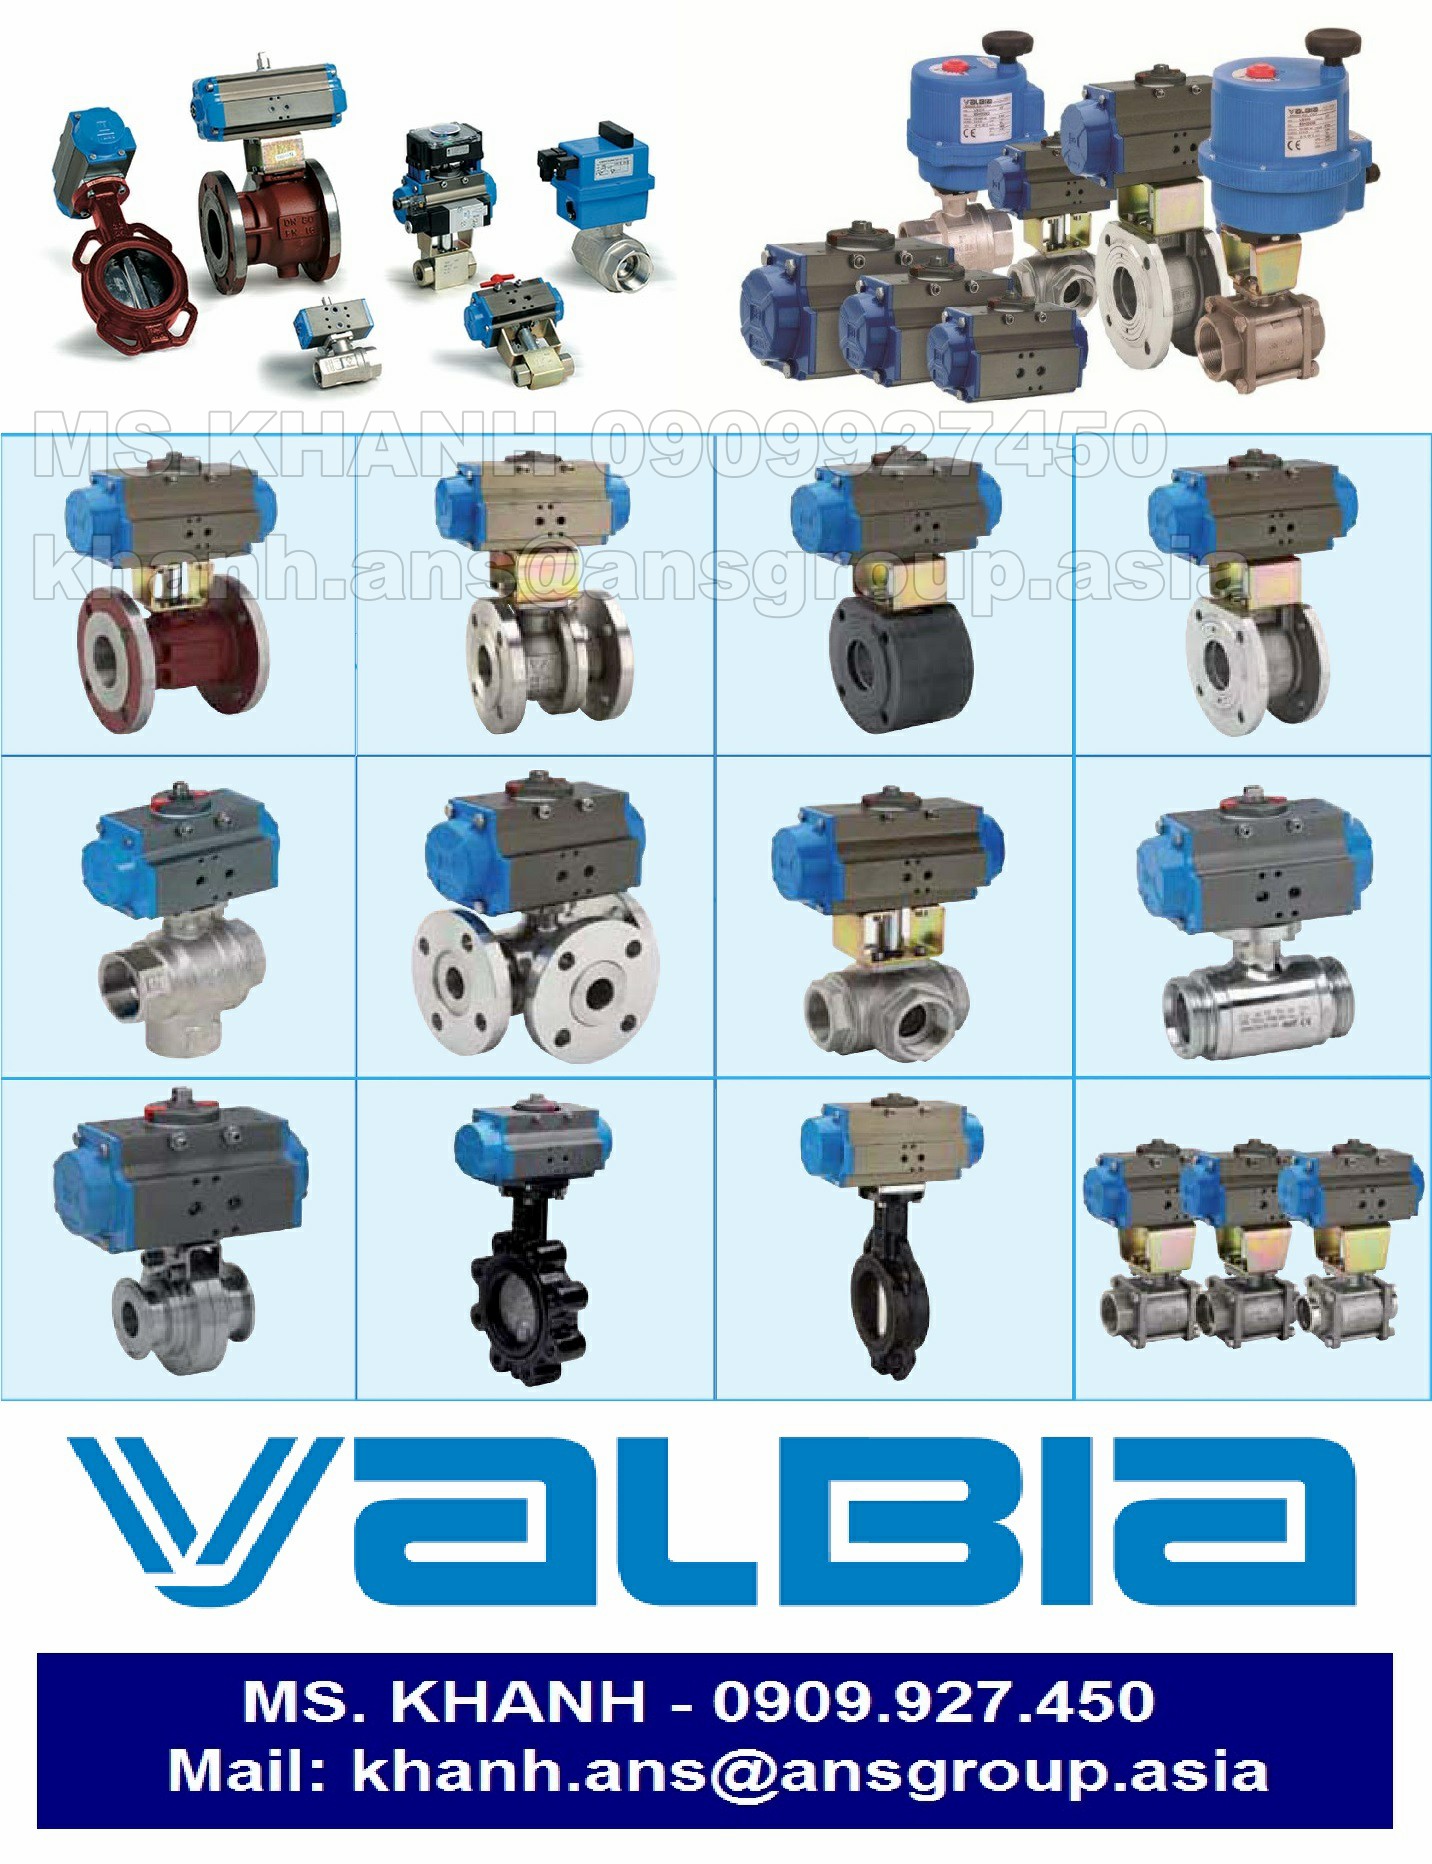 van-8p05070010-03900280065-valve-valbia-vietnam.png